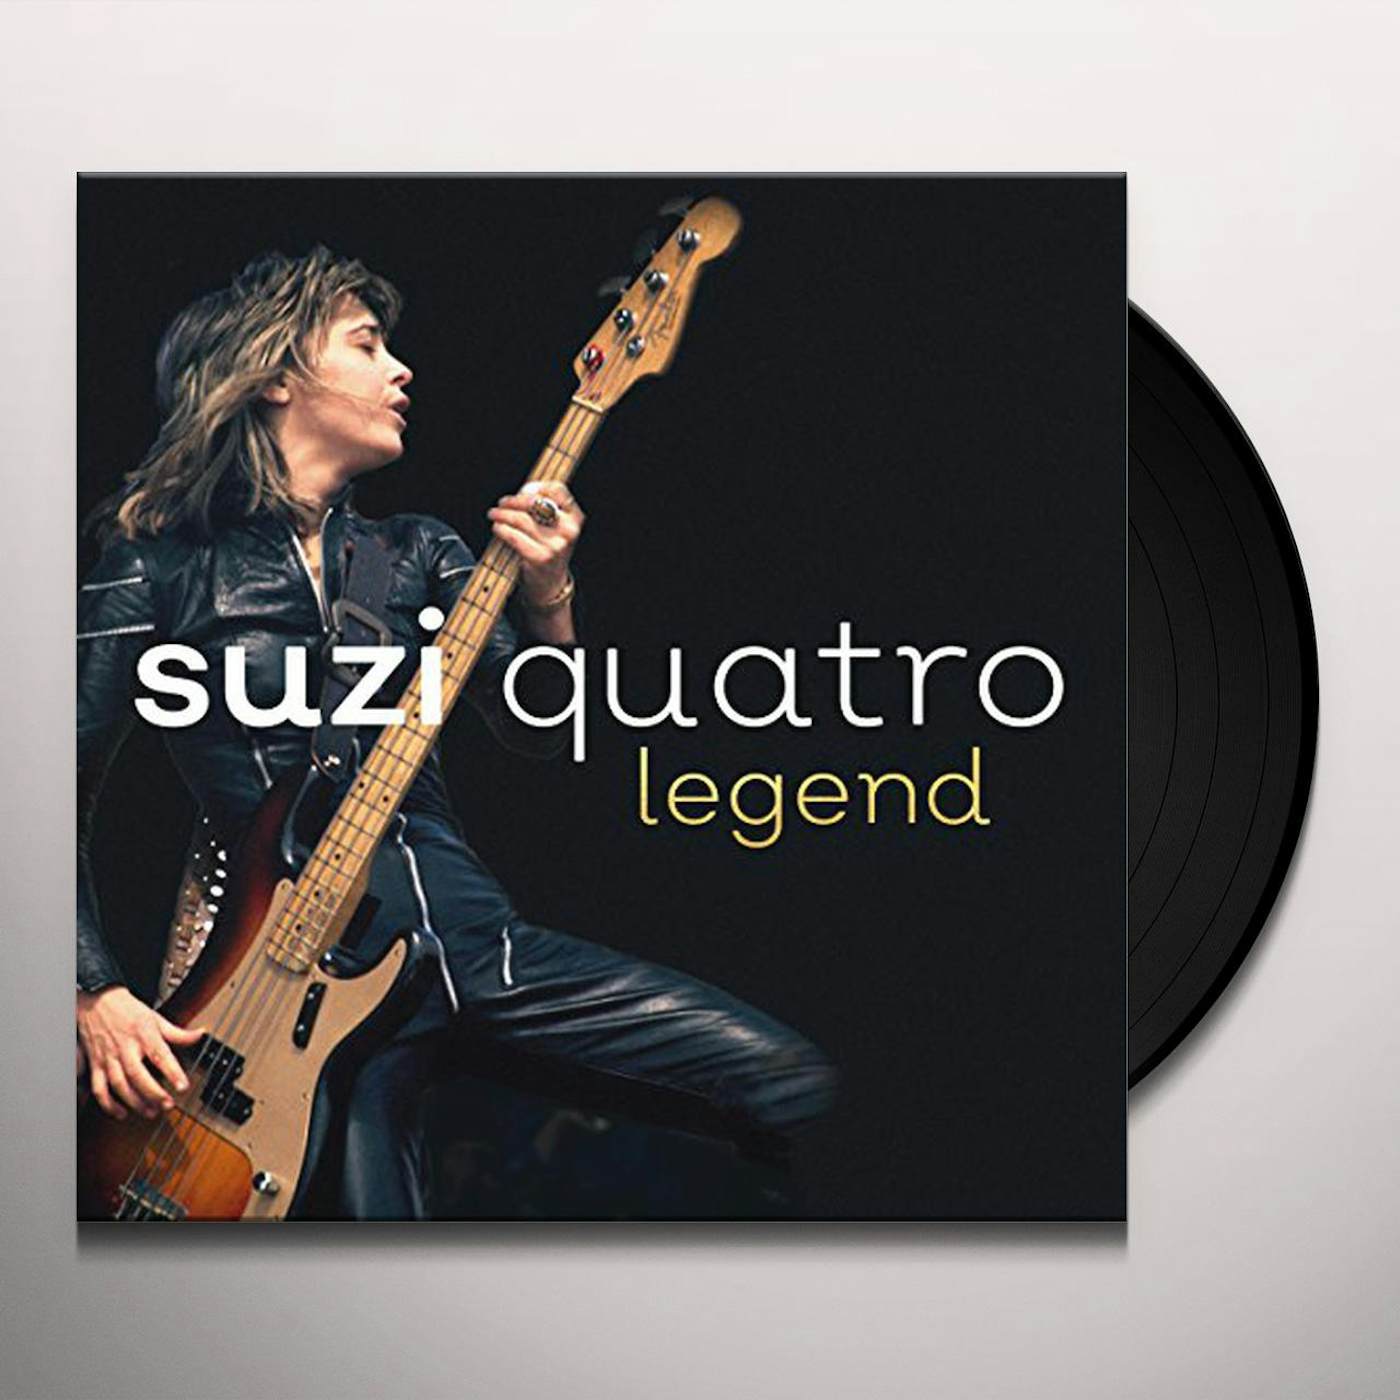 Suzi Quatro Legend: The Of Vinyl Record